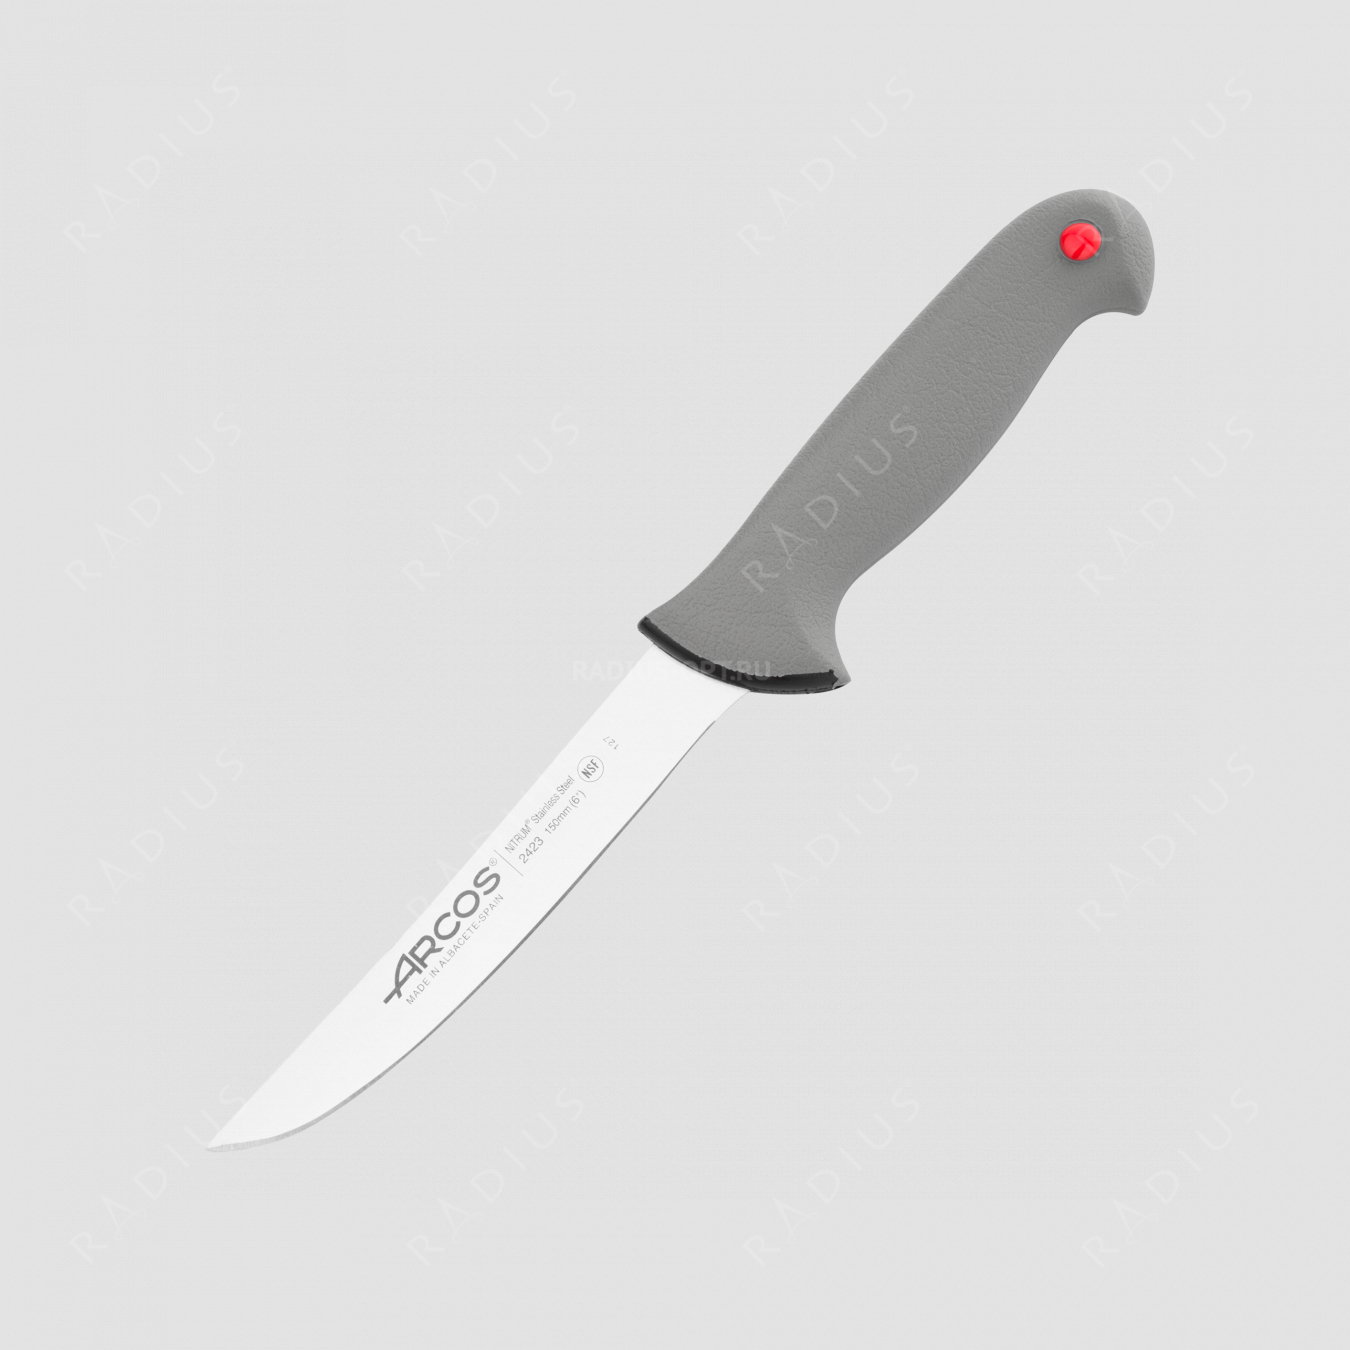 Нож кухонный обвалочный 15 см, серия Colour-prof, ARCOS, Испания